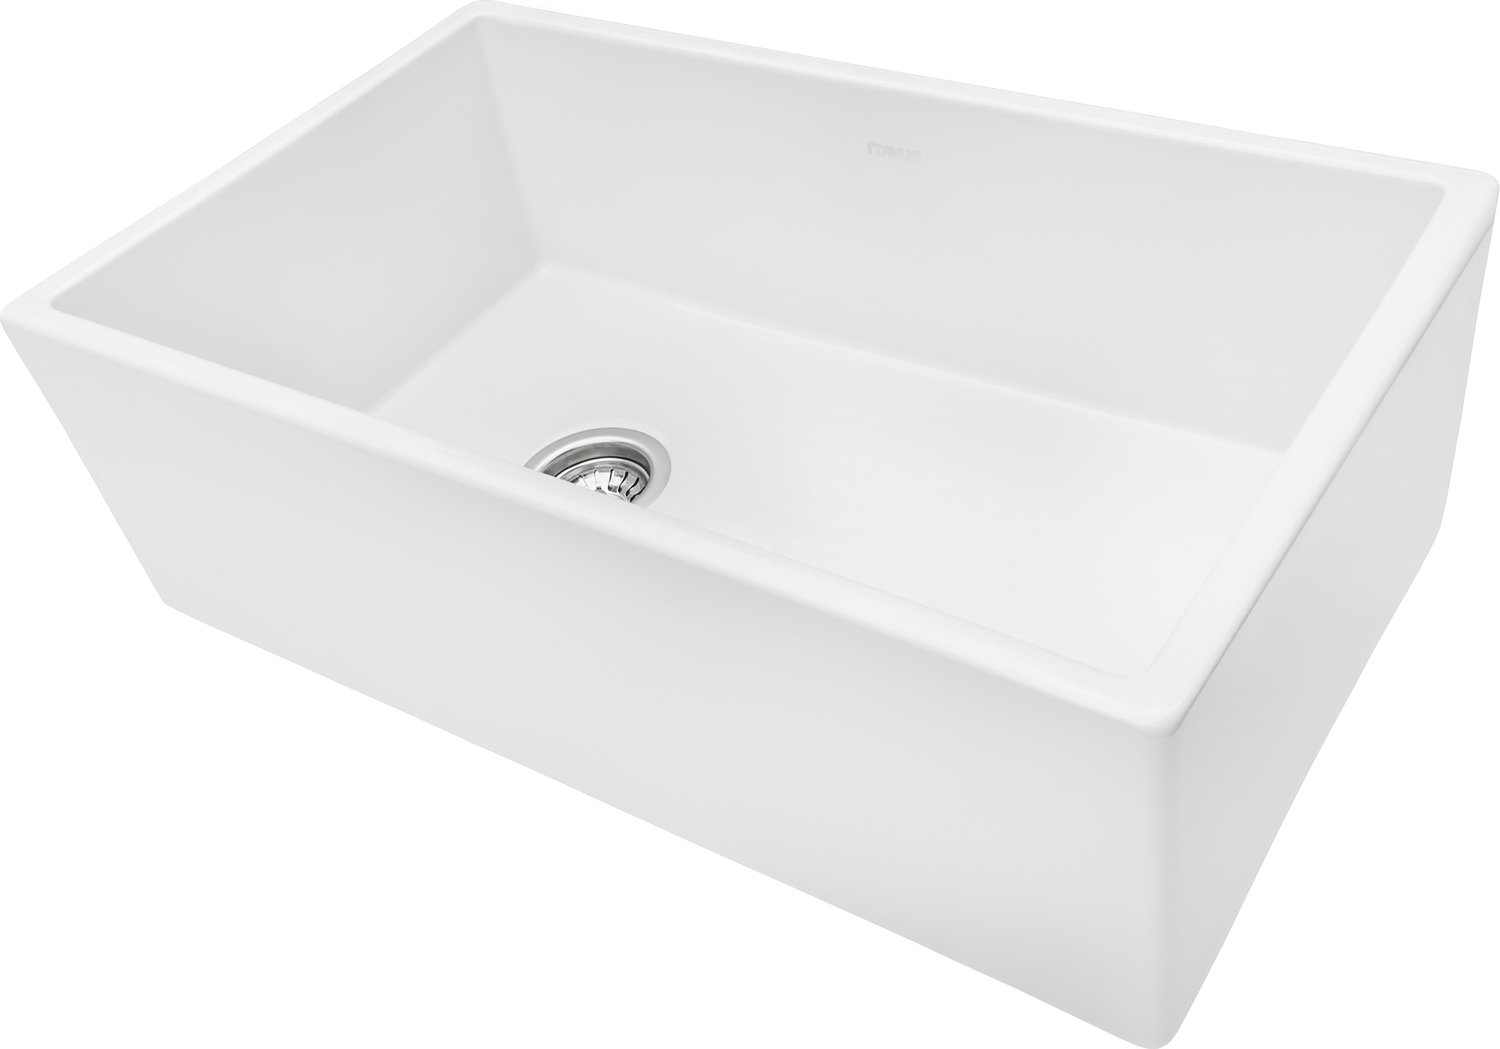 single bowl drop in kitchen sink with drainboard Ruvati Kitchen Sink White